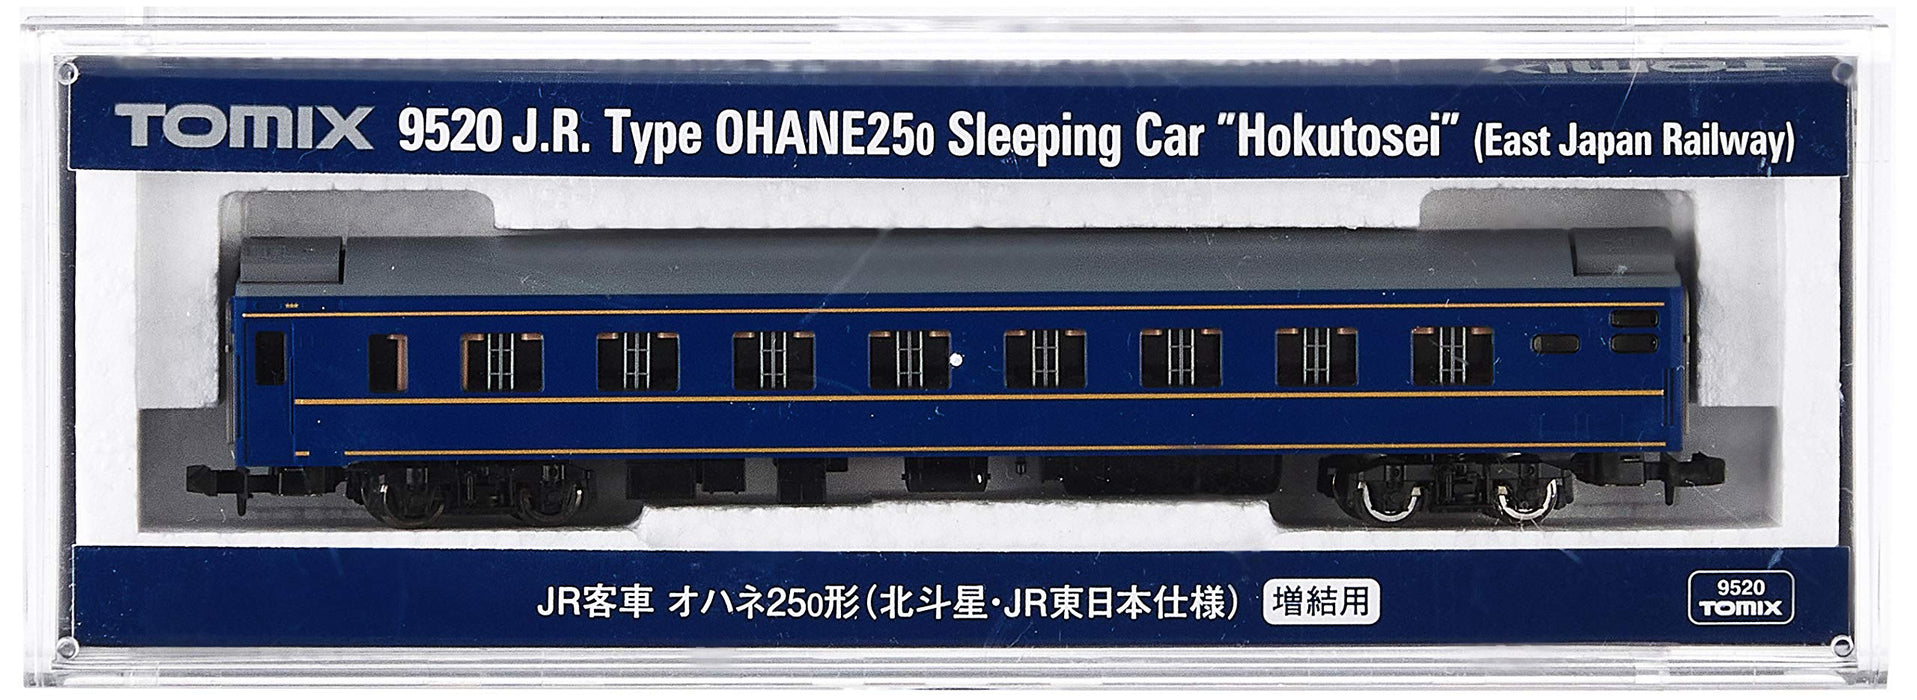 Tomytec Tomix N Gauge Ohane 25 0 Hokutosei Passenger Car - JR East Model 9520